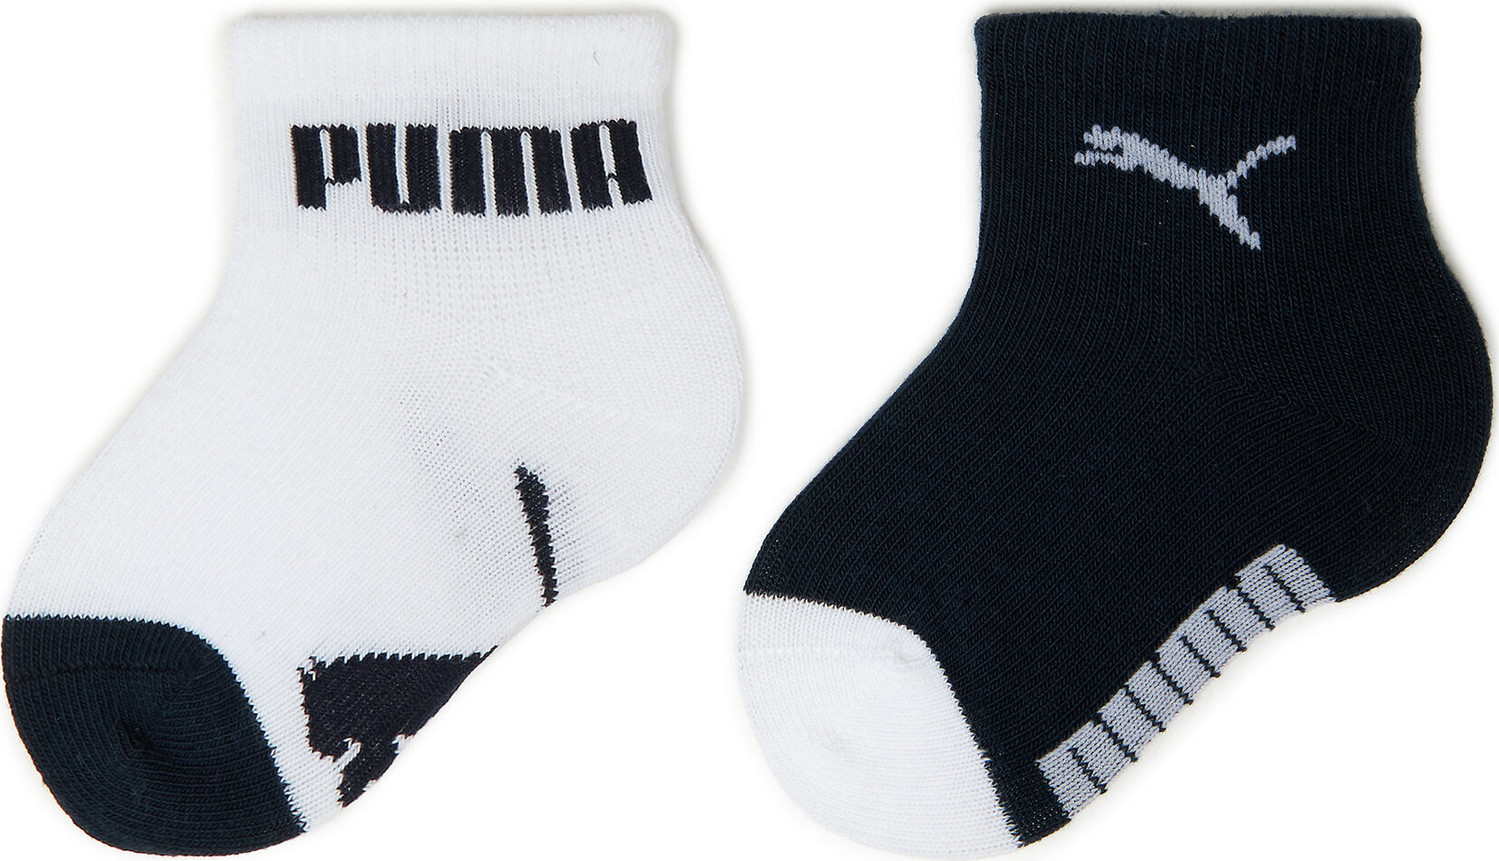 Sada 2 párů dětských vysokých ponožek Puma Baby Mini Cats Lifestyle Sock 2P 935478 New Navy / White 03